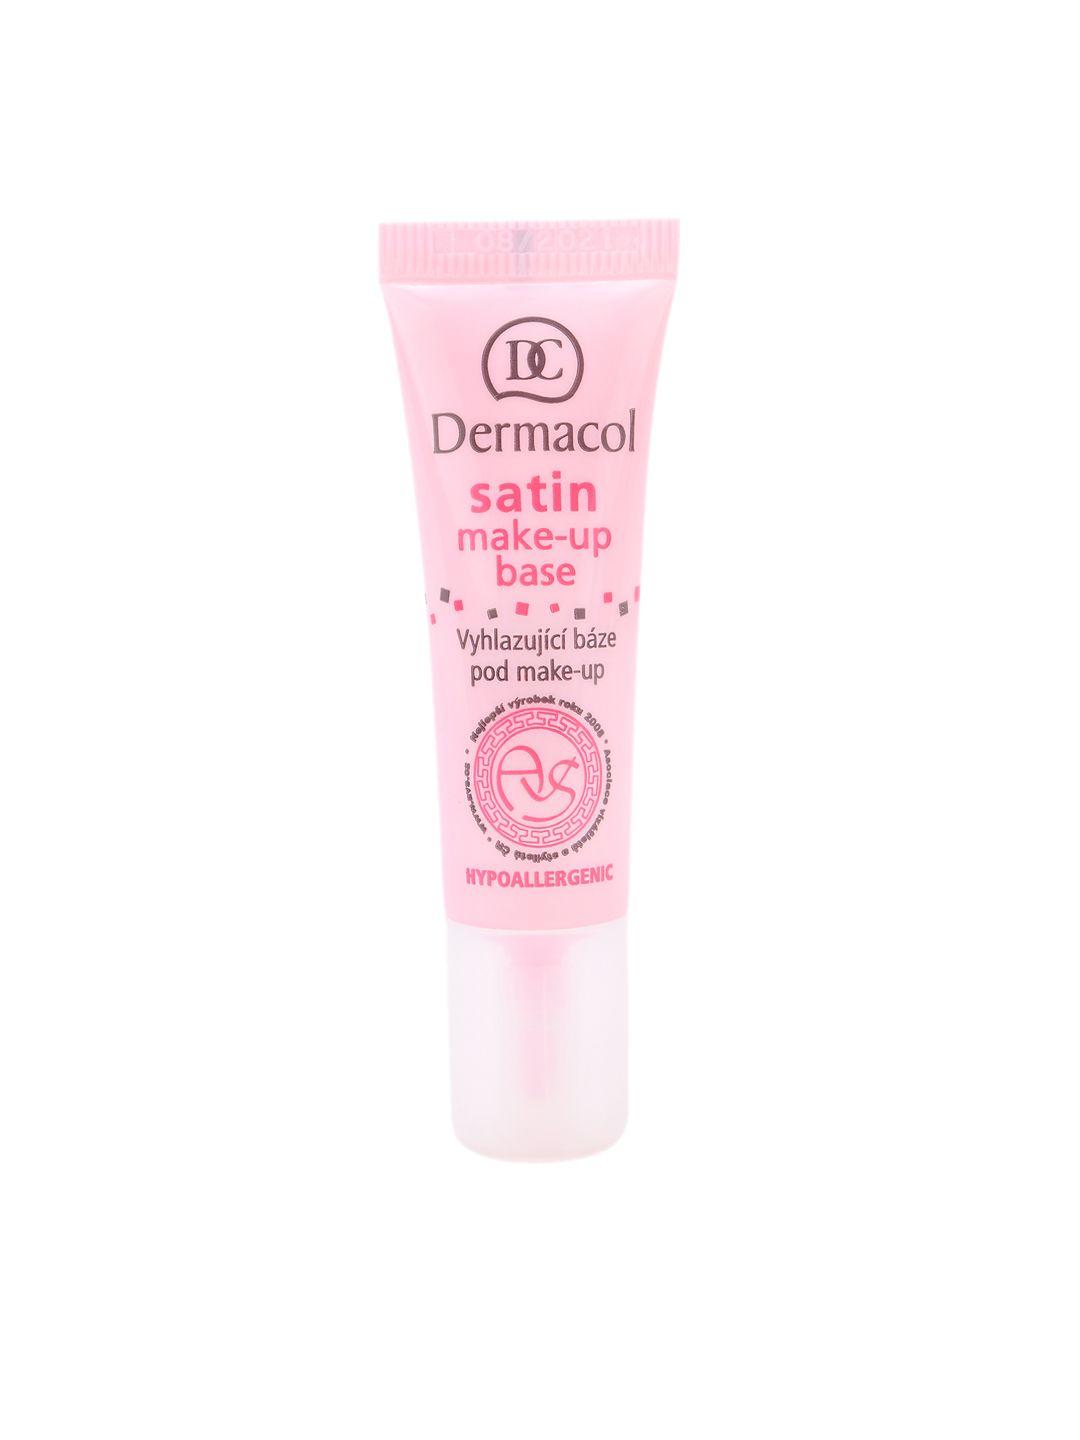 dermacol-1406a-satin-make-up-base-primer-10ml